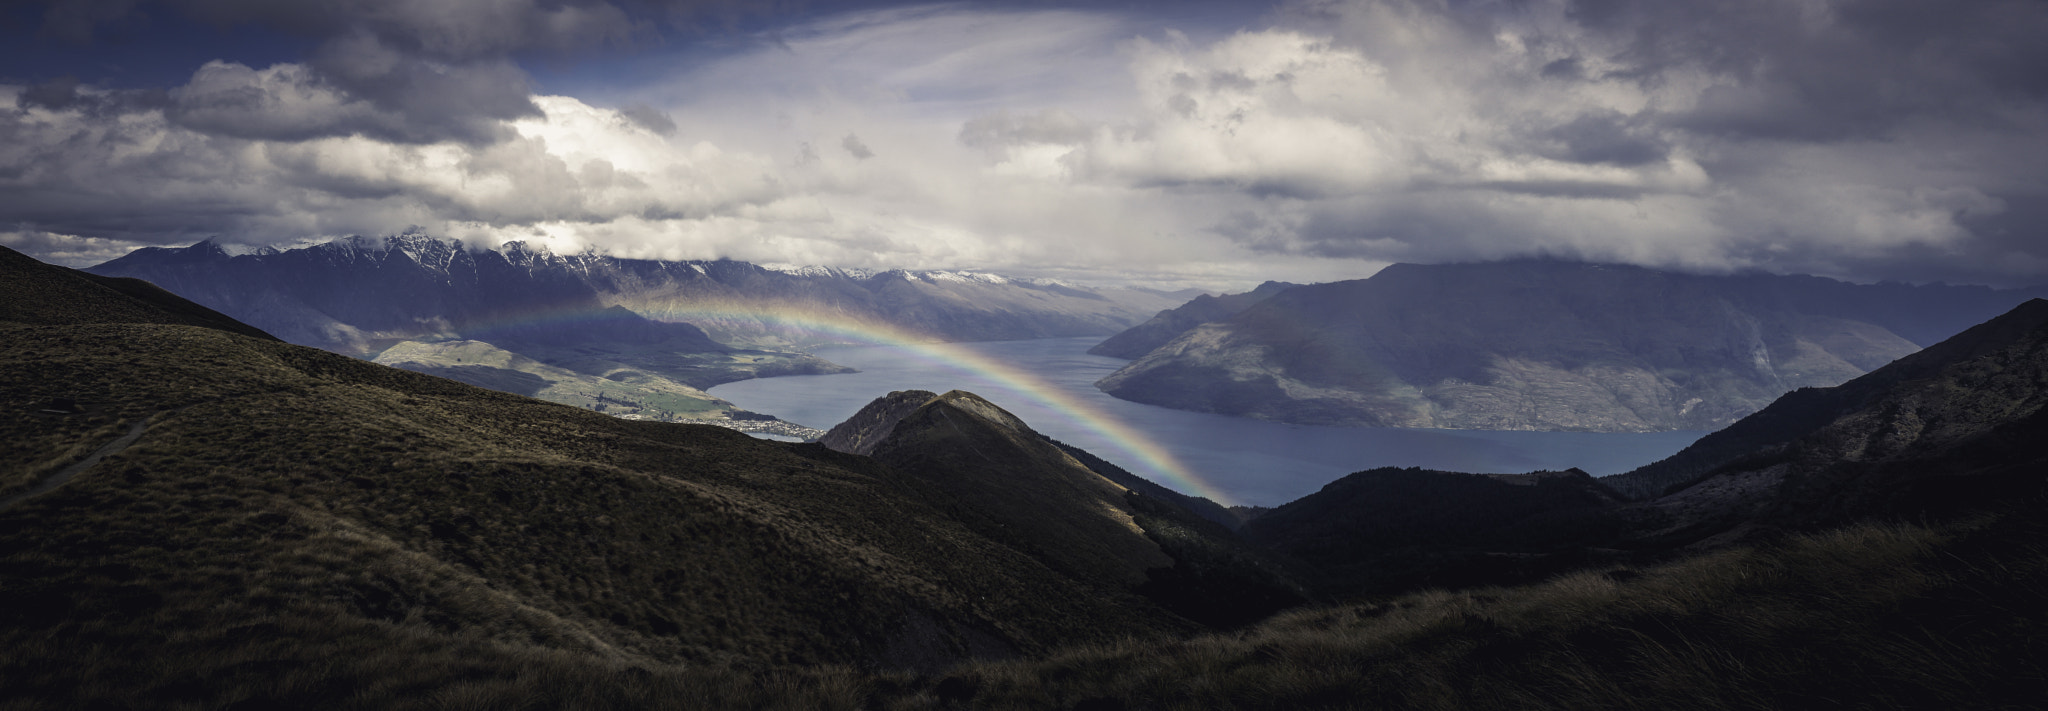 Panasonic Lumix DMC-G2 sample photo. Rainbow over lake wakatipu photography